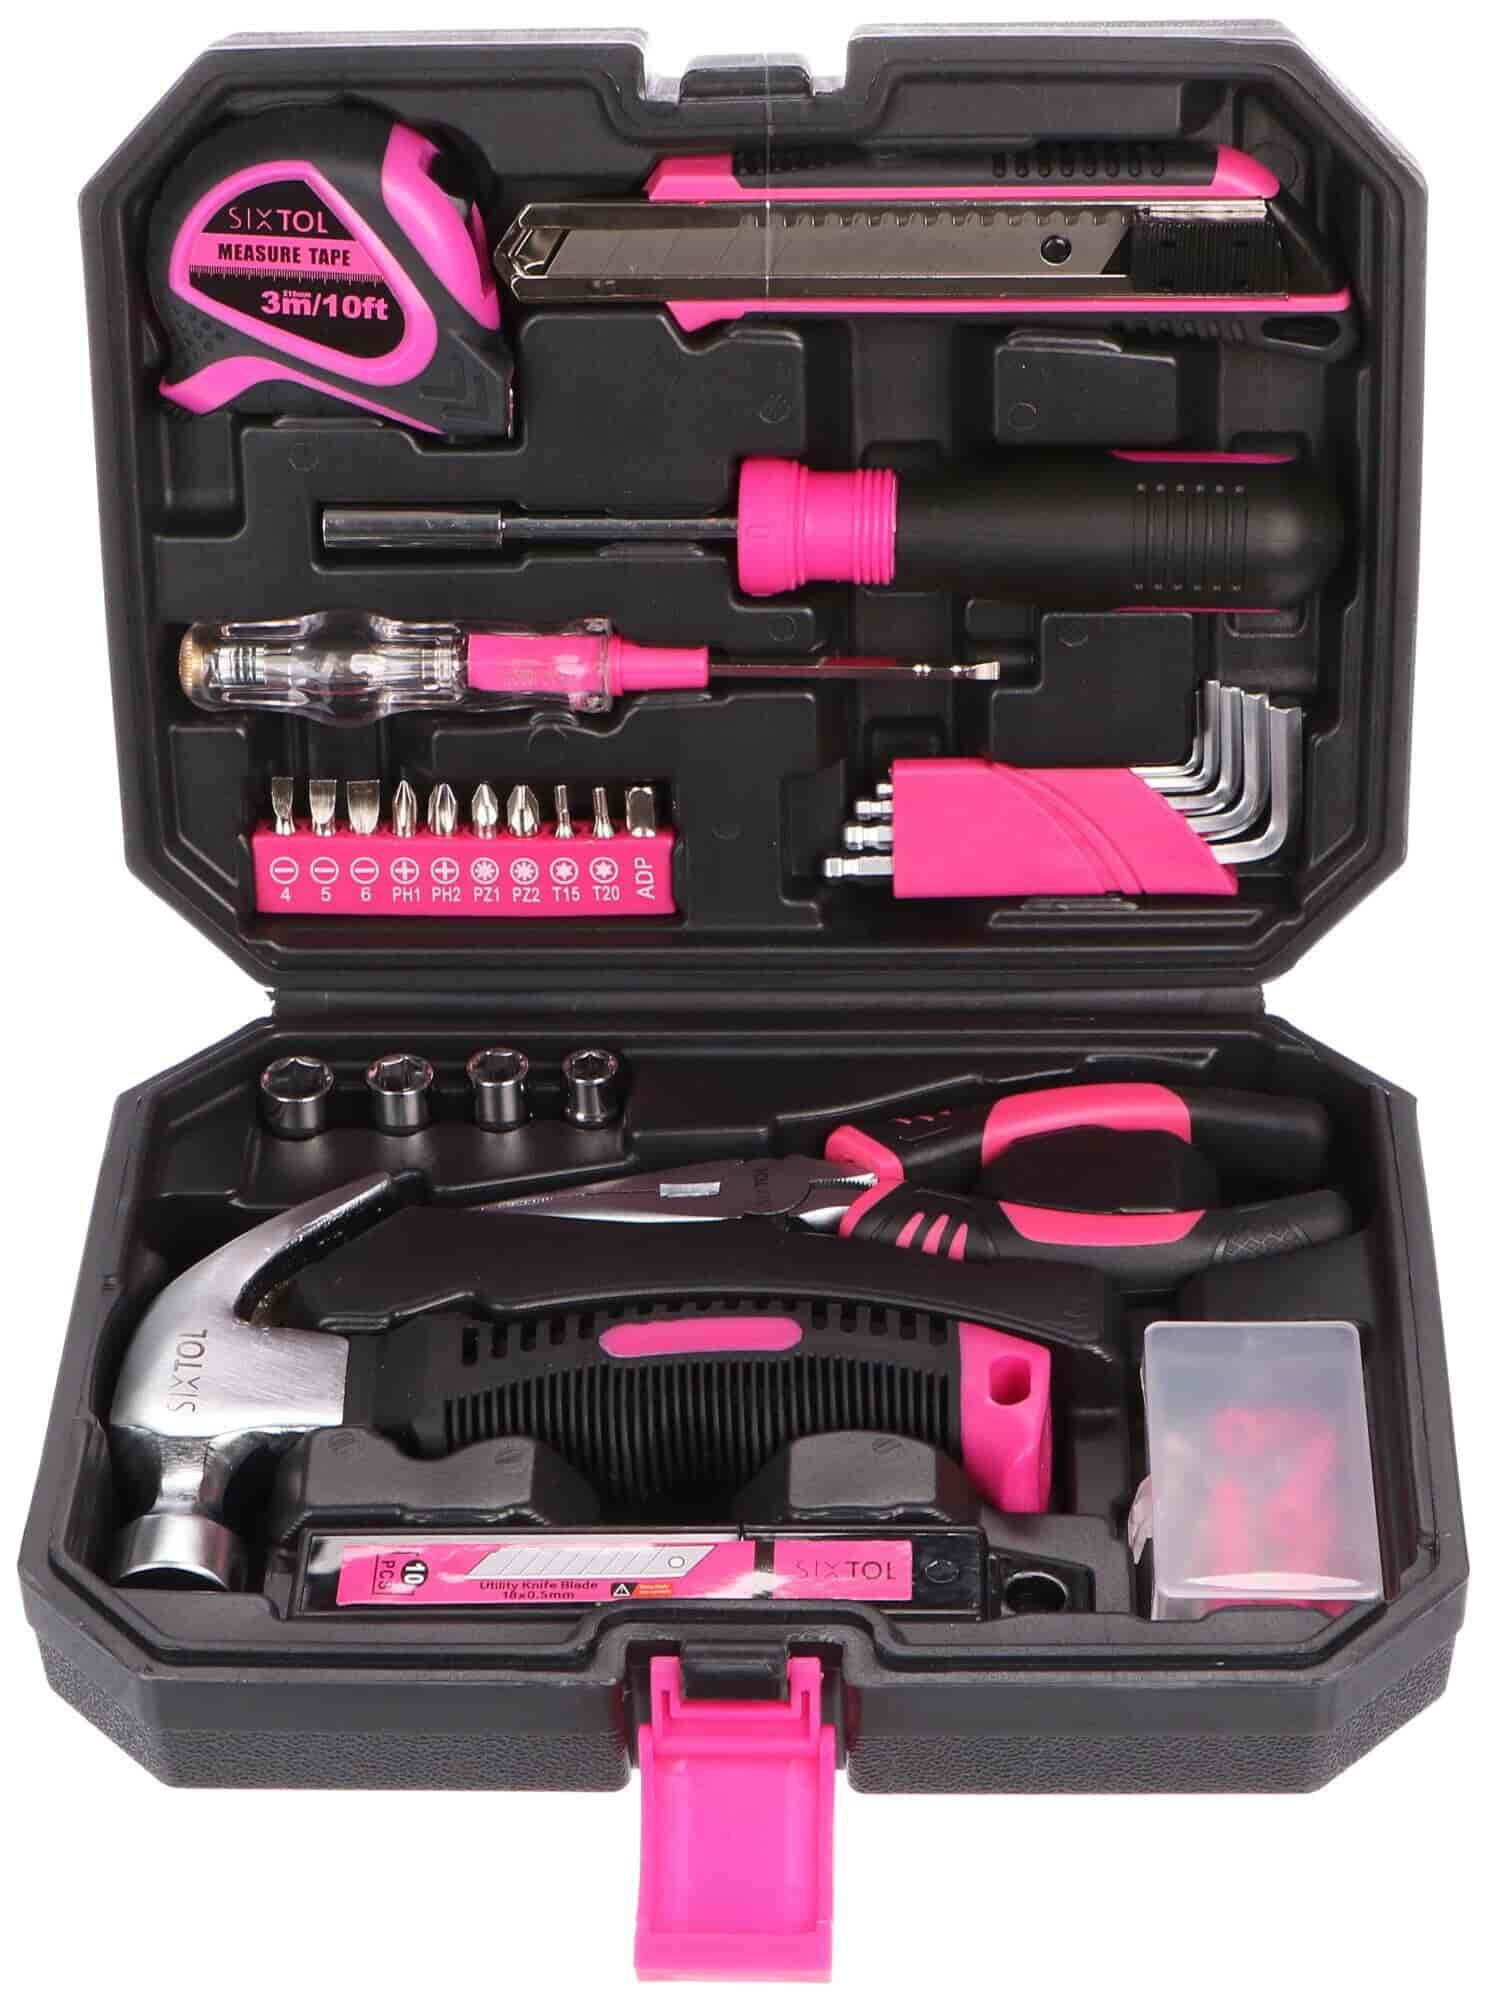 Pink værktøjssæt HOME PINK 66N.A.Diverse værktøj Lyserød Praktiske lyserødt/pink værktøjssæt SIXTOL HOME PINK 66 er en god hjælper i hjemmet. Sættet indeholderde mest brugte værktøjer , som du nemt og hurtigt kan reparere alt med. SIXTOL HOME PINK 66 værktøjssættet består af værktøj som tænger, unbrakonøgler, en hammer og meget mere. En masse nyttigt småtilbehør er også inkluderet. Værktøjet opbevares i en kompakt, praktisk sort-pink kuffert.